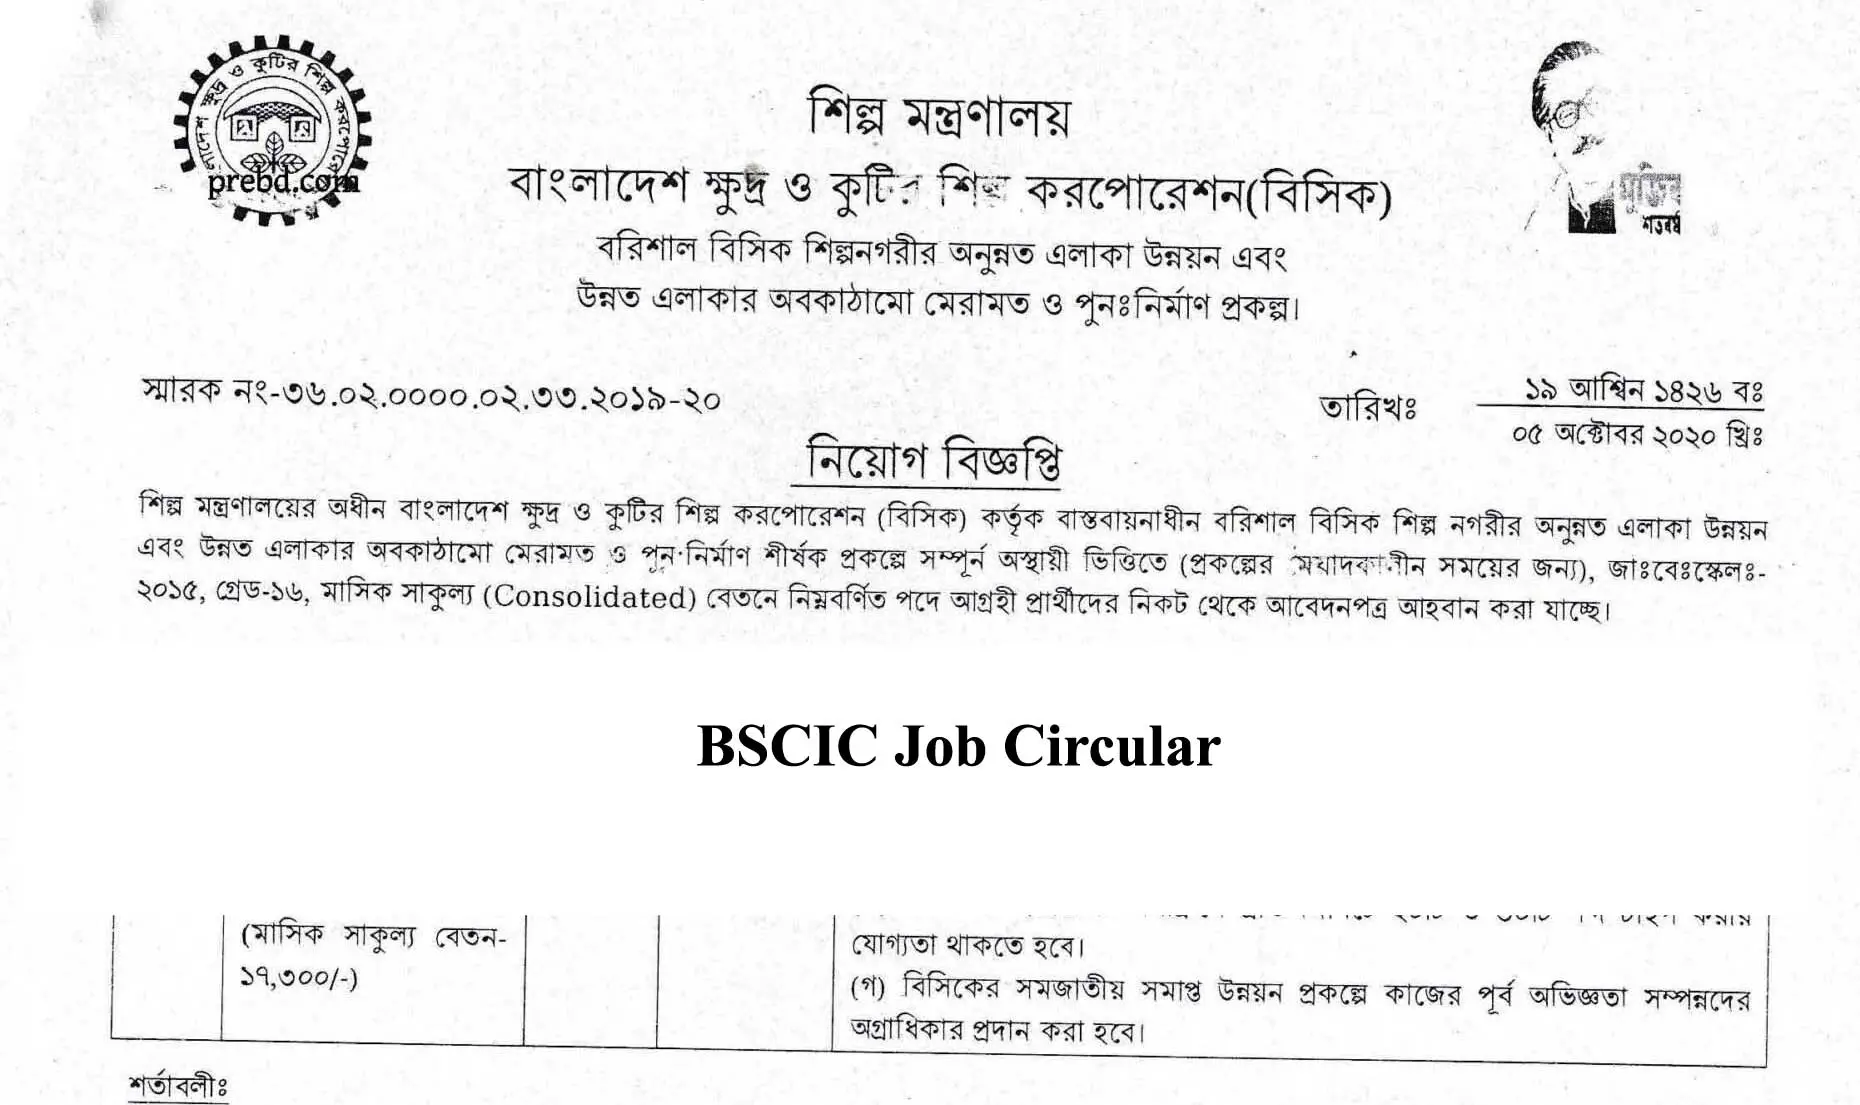 BSCIC Job Circular 2020